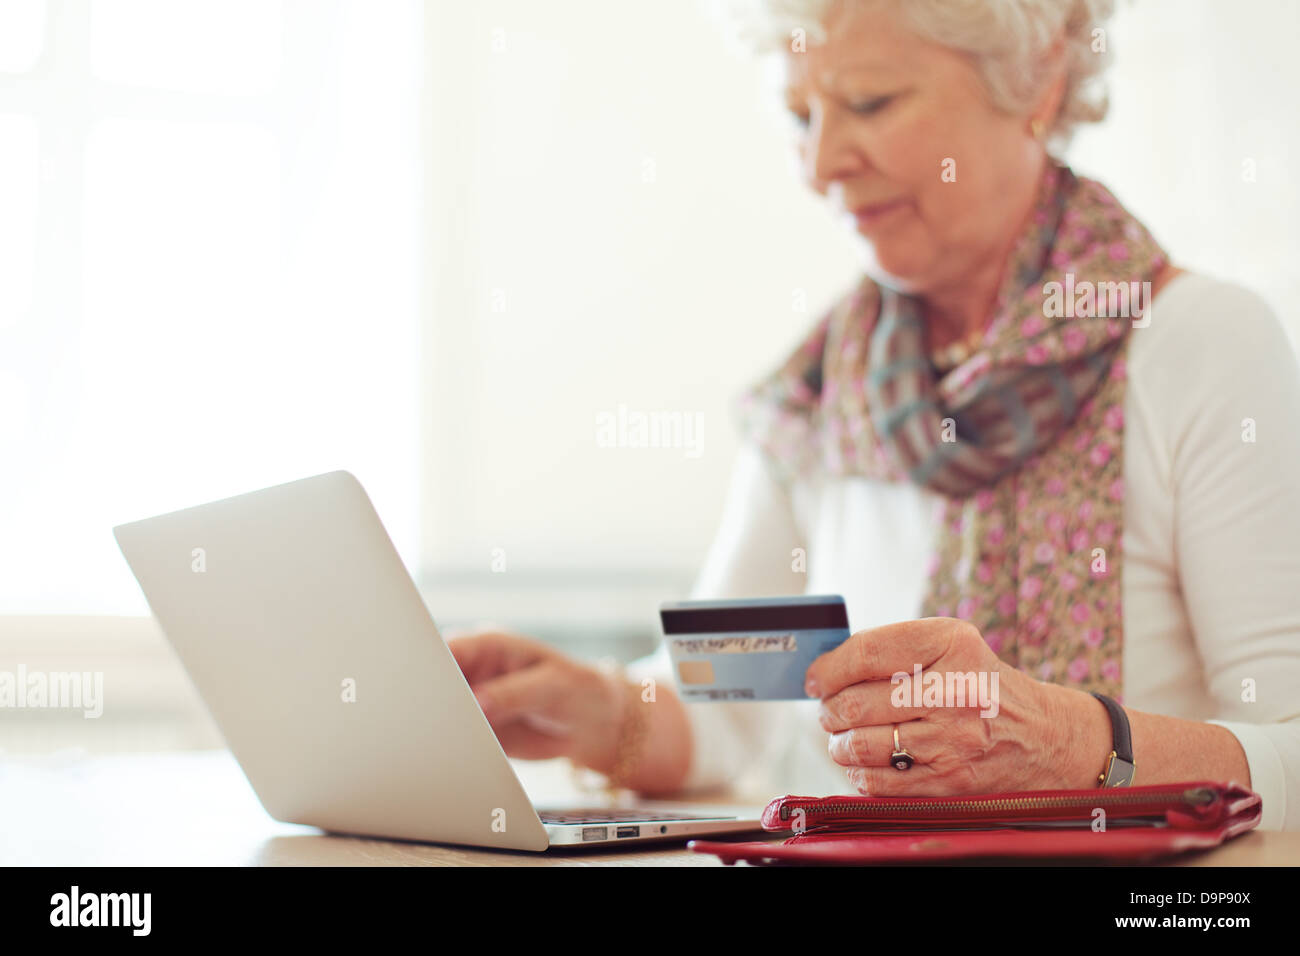 Abuela utilizando una tarjeta de crédito para hacer una transacción en línea Foto de stock